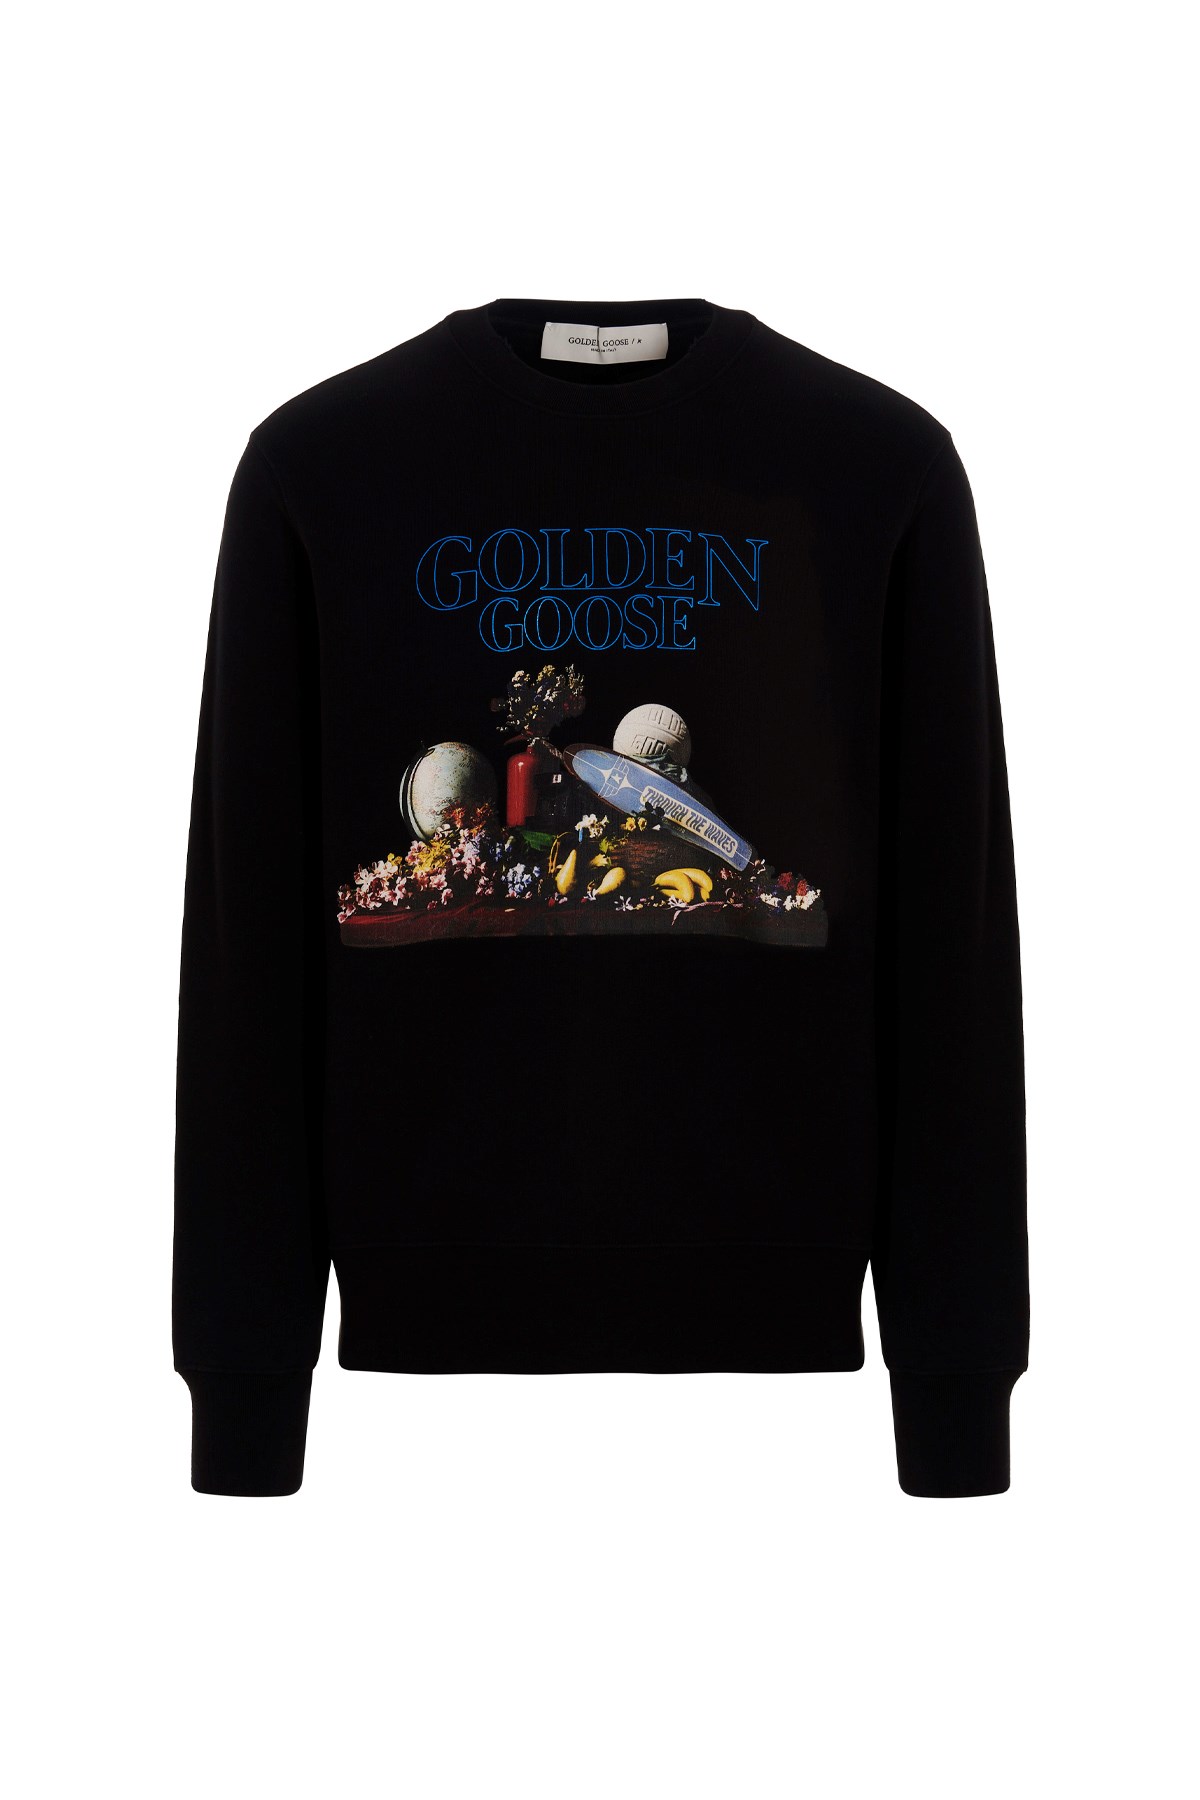 GOLDEN GOOSE 'Archibald’ Sweatshirt